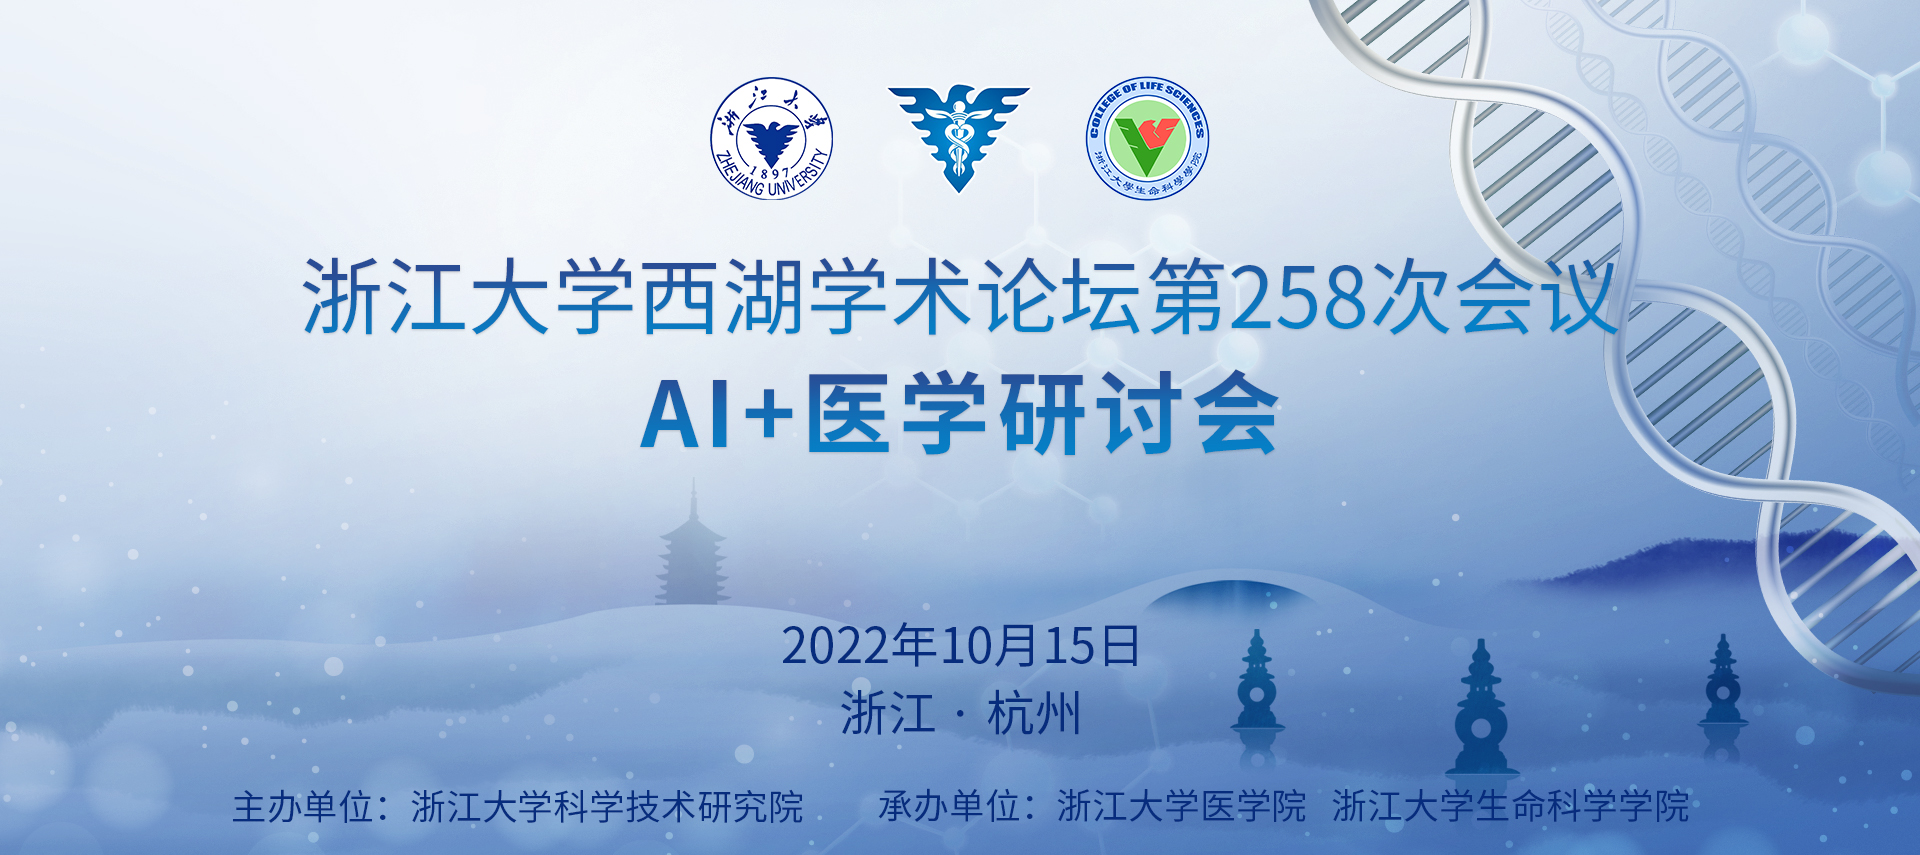 浙江大学西湖学术论坛第258次会议 AI+医学研讨会